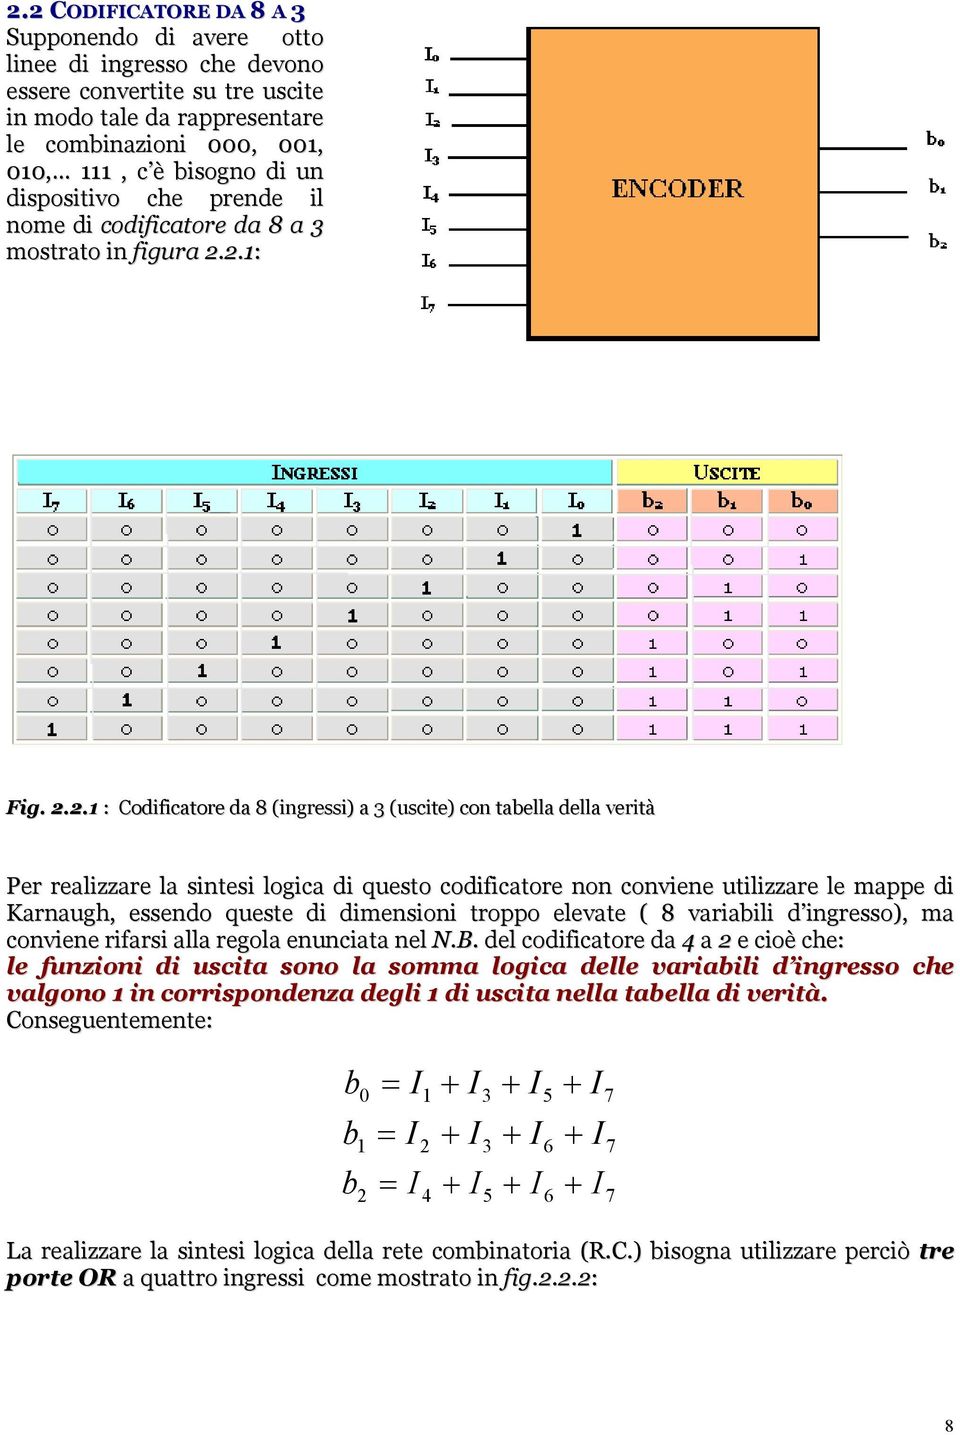 2.1: Fig. 2.2.1 : Codificatore da 8 (ingressi) a 3 (uscite) con tabella della verità Per realizzare la sintesi logica di questo codificatore non conviene utilizzare le mappe di Karnaugh, essendo